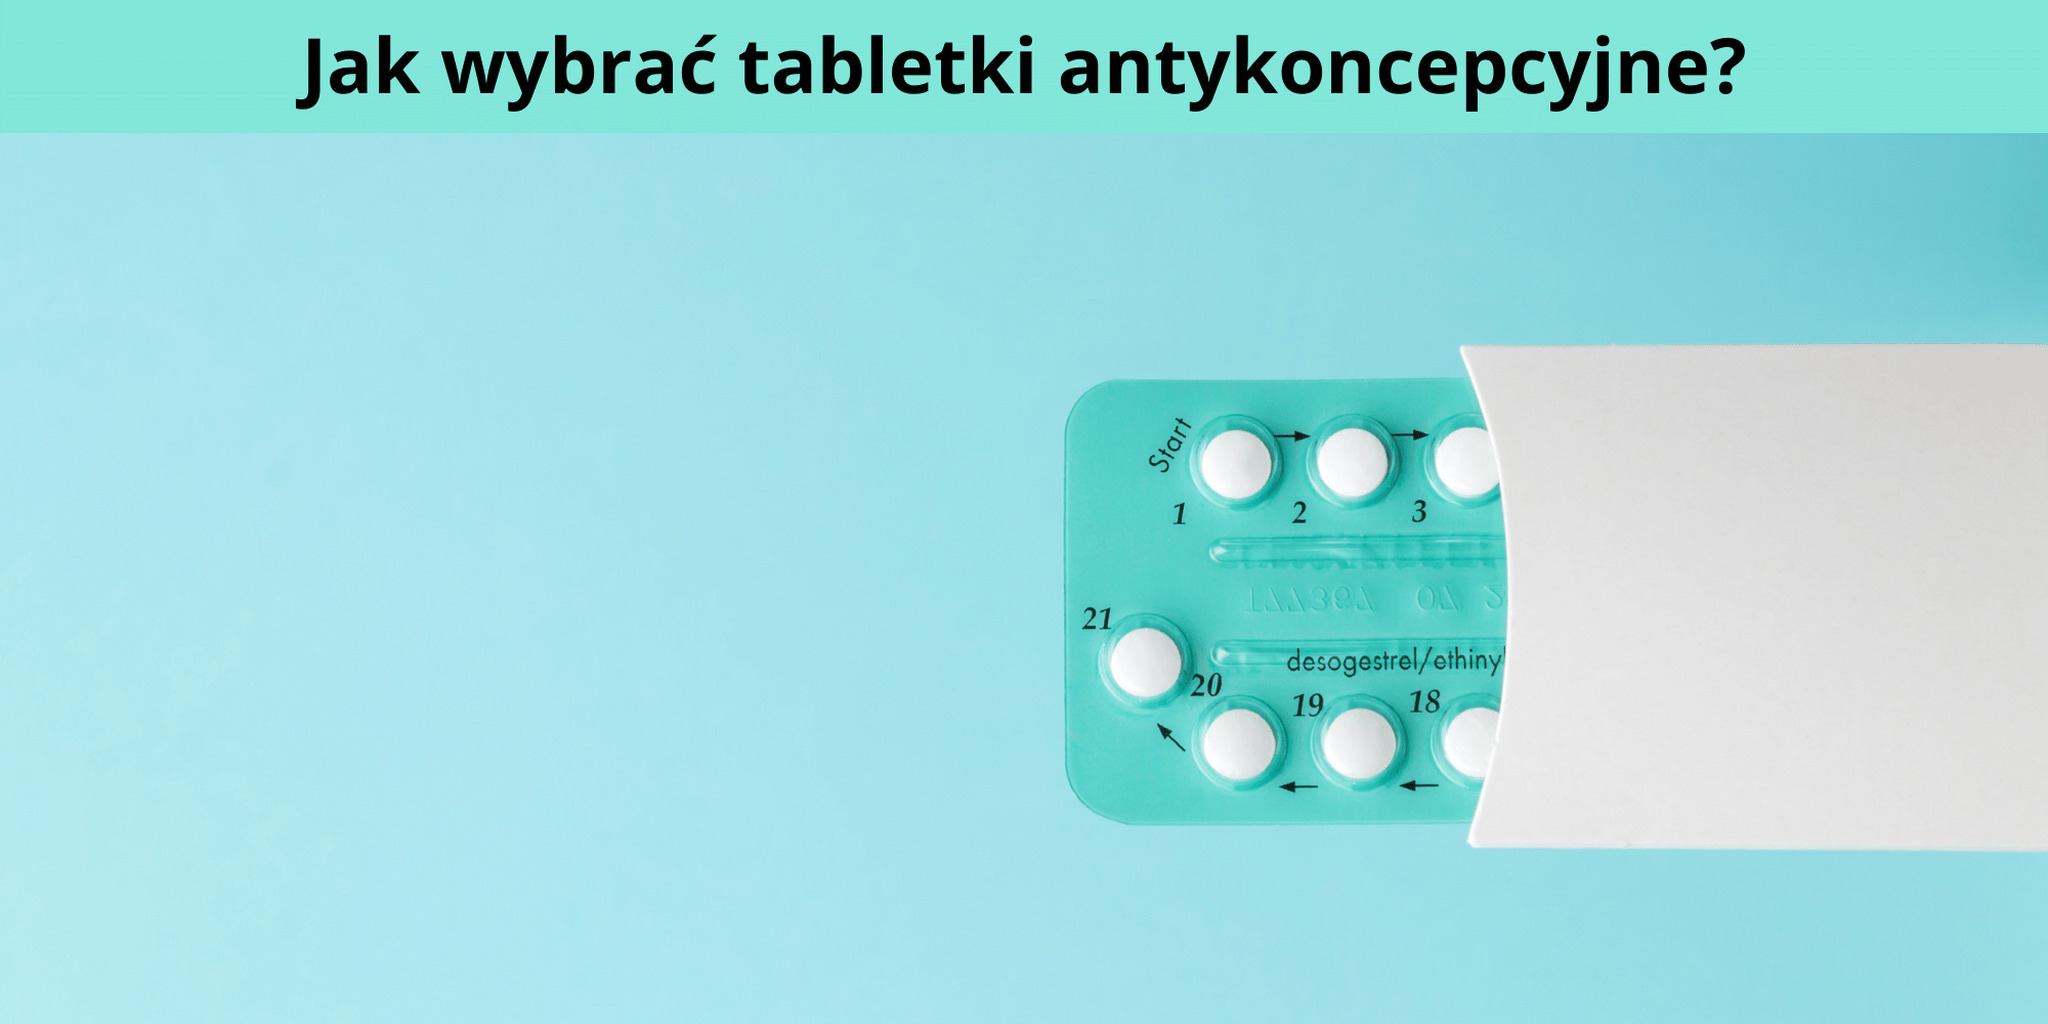 Jak wybrać tabletki antykoncepcyjne?